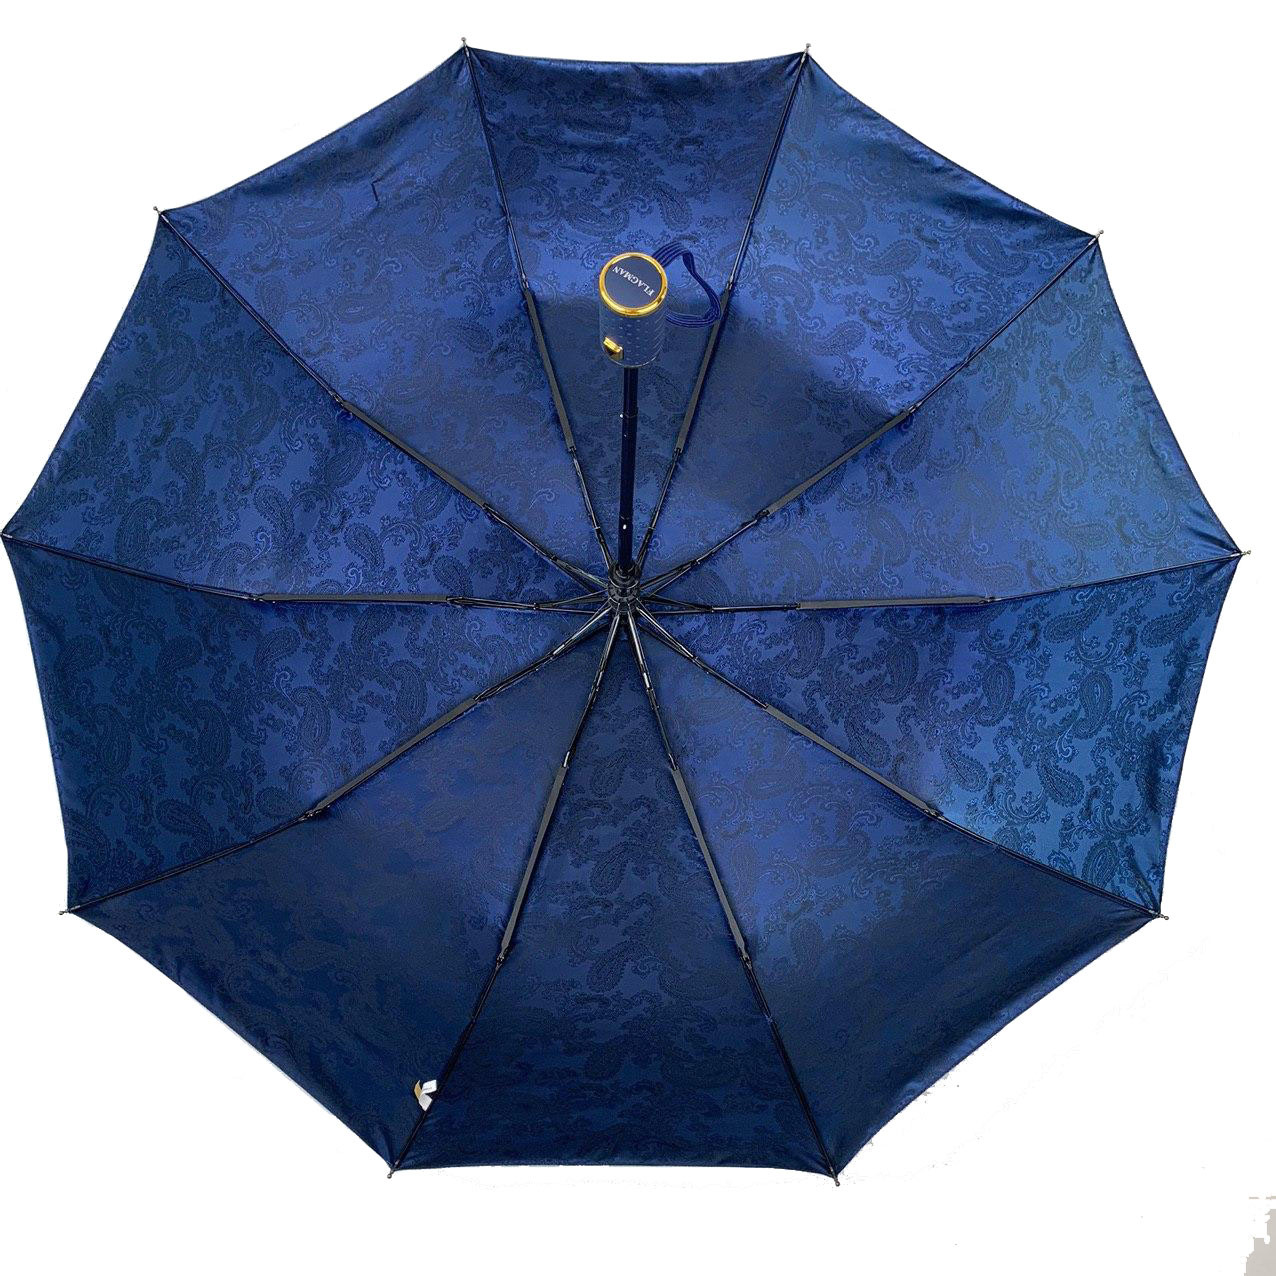 Женский складной зонтик полуавтомат The Best 102 см синий - фото 3